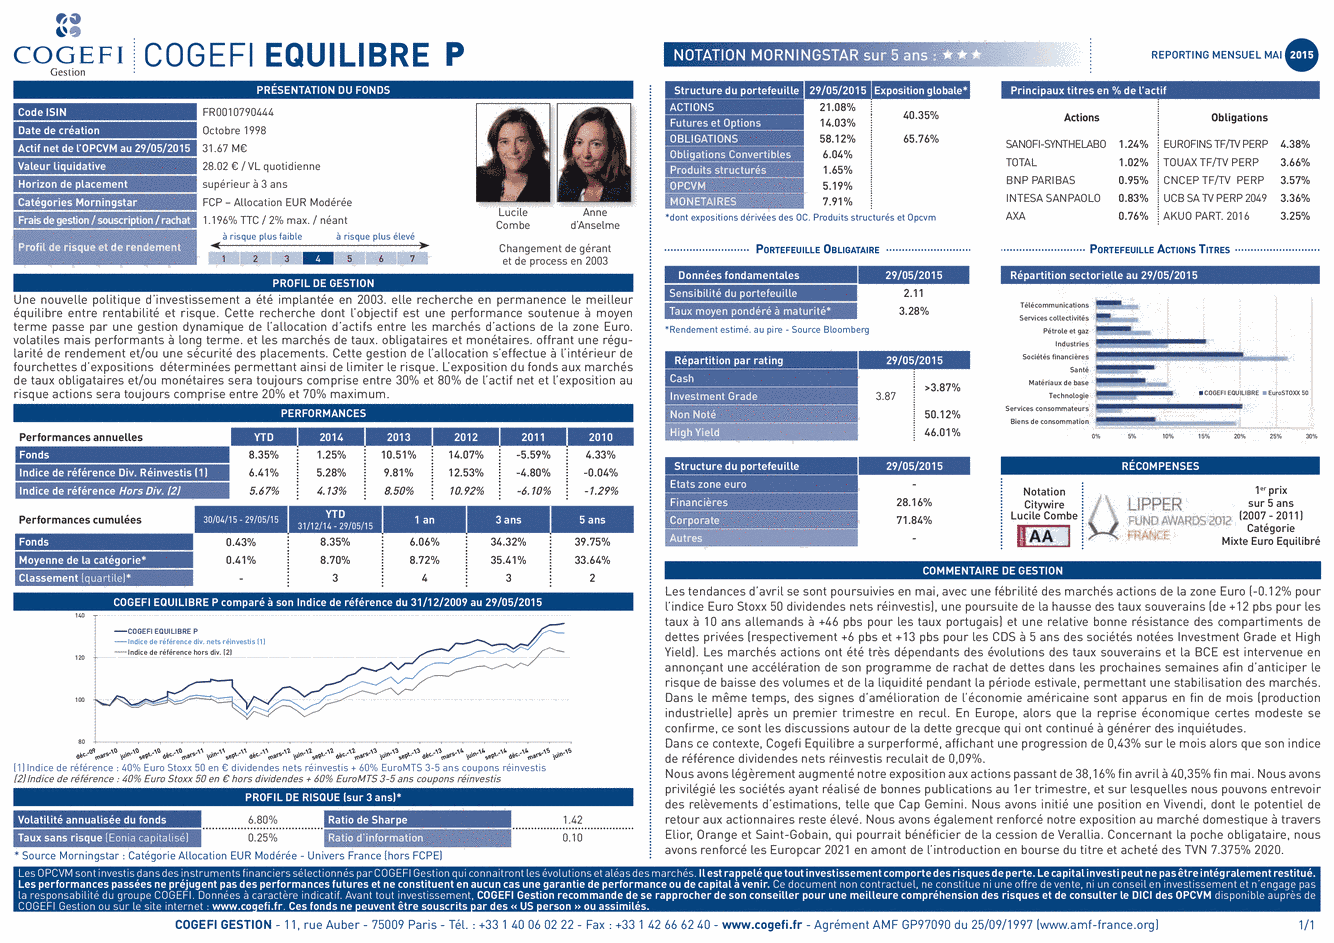 Fiche Produit Cogefi Equilibre P - 31/05/2015 - Français